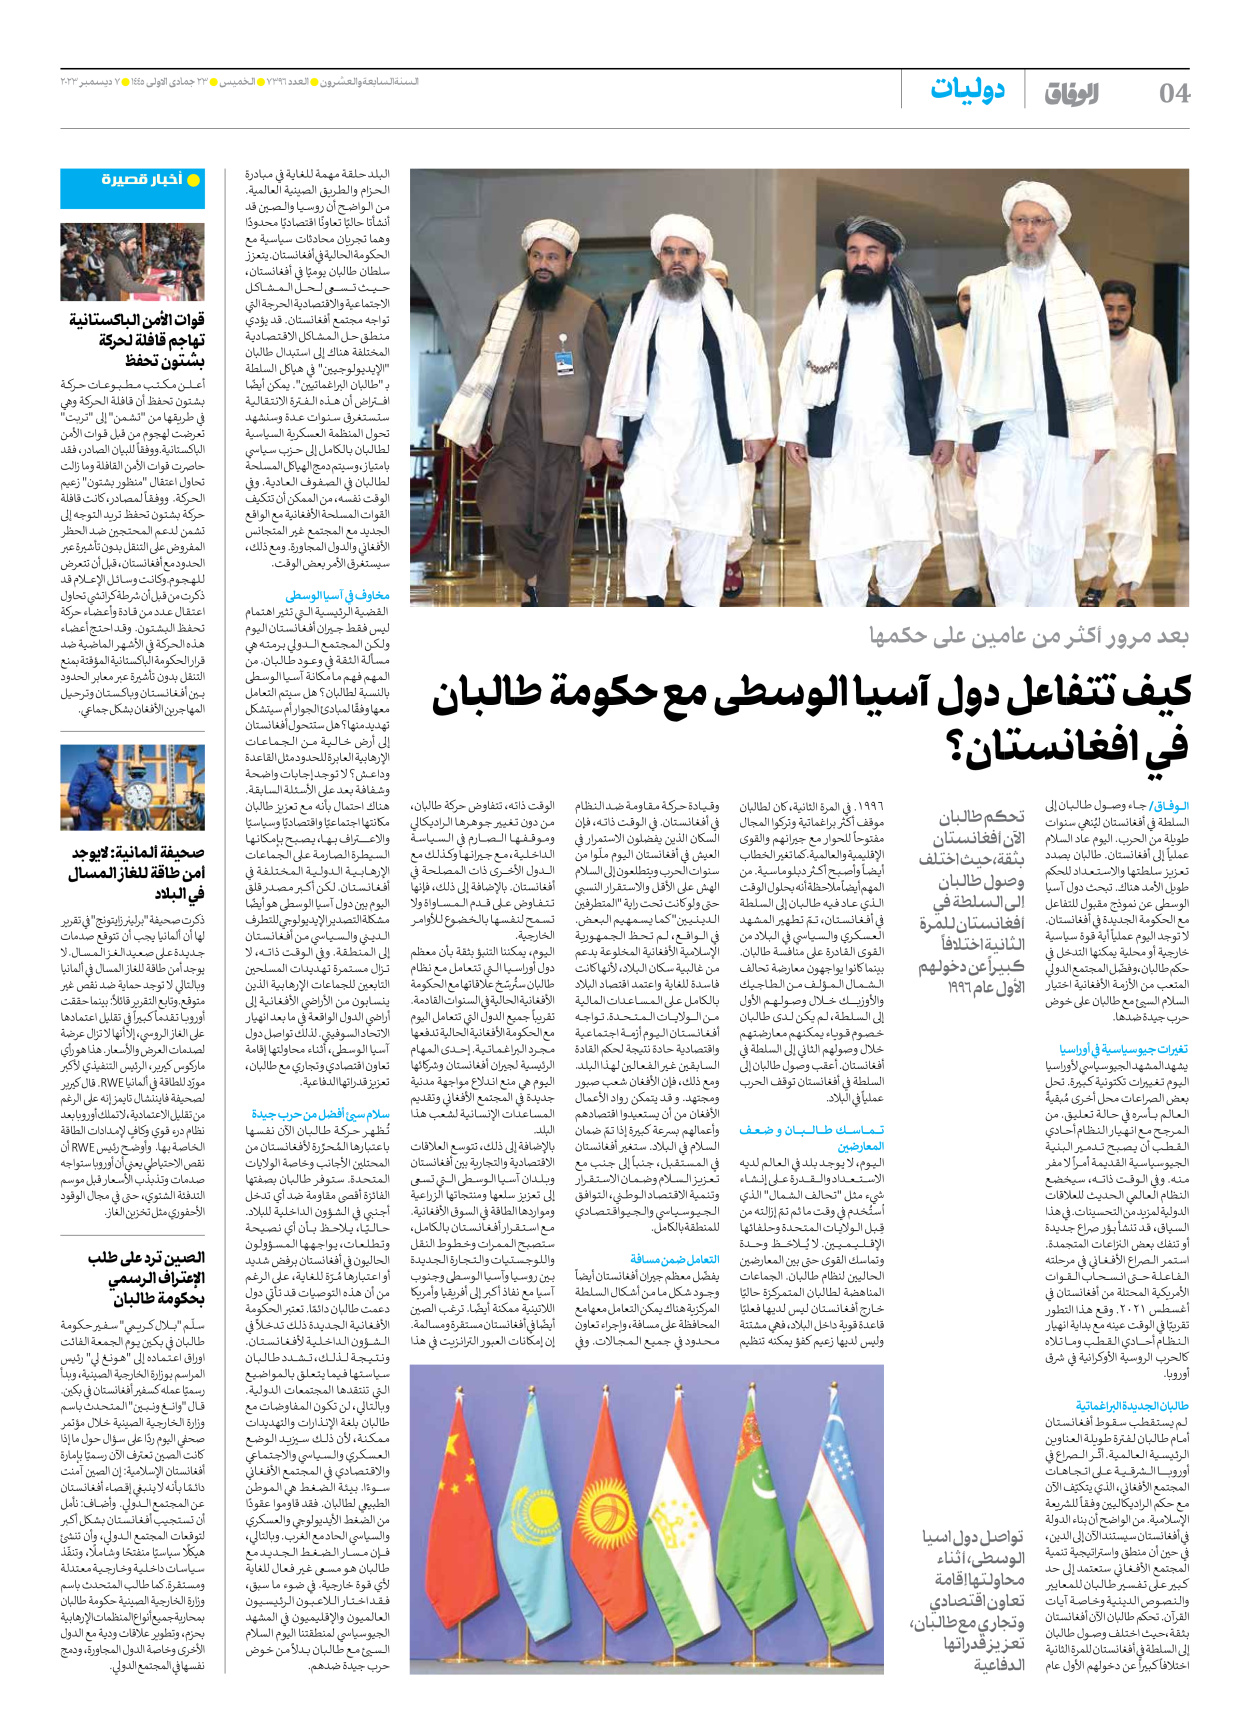 صحیفة ایران الدولیة الوفاق - العدد سبعة آلاف وثلاثمائة وستة وتسعون - ٠٧ ديسمبر ٢٠٢٣ - الصفحة ٤